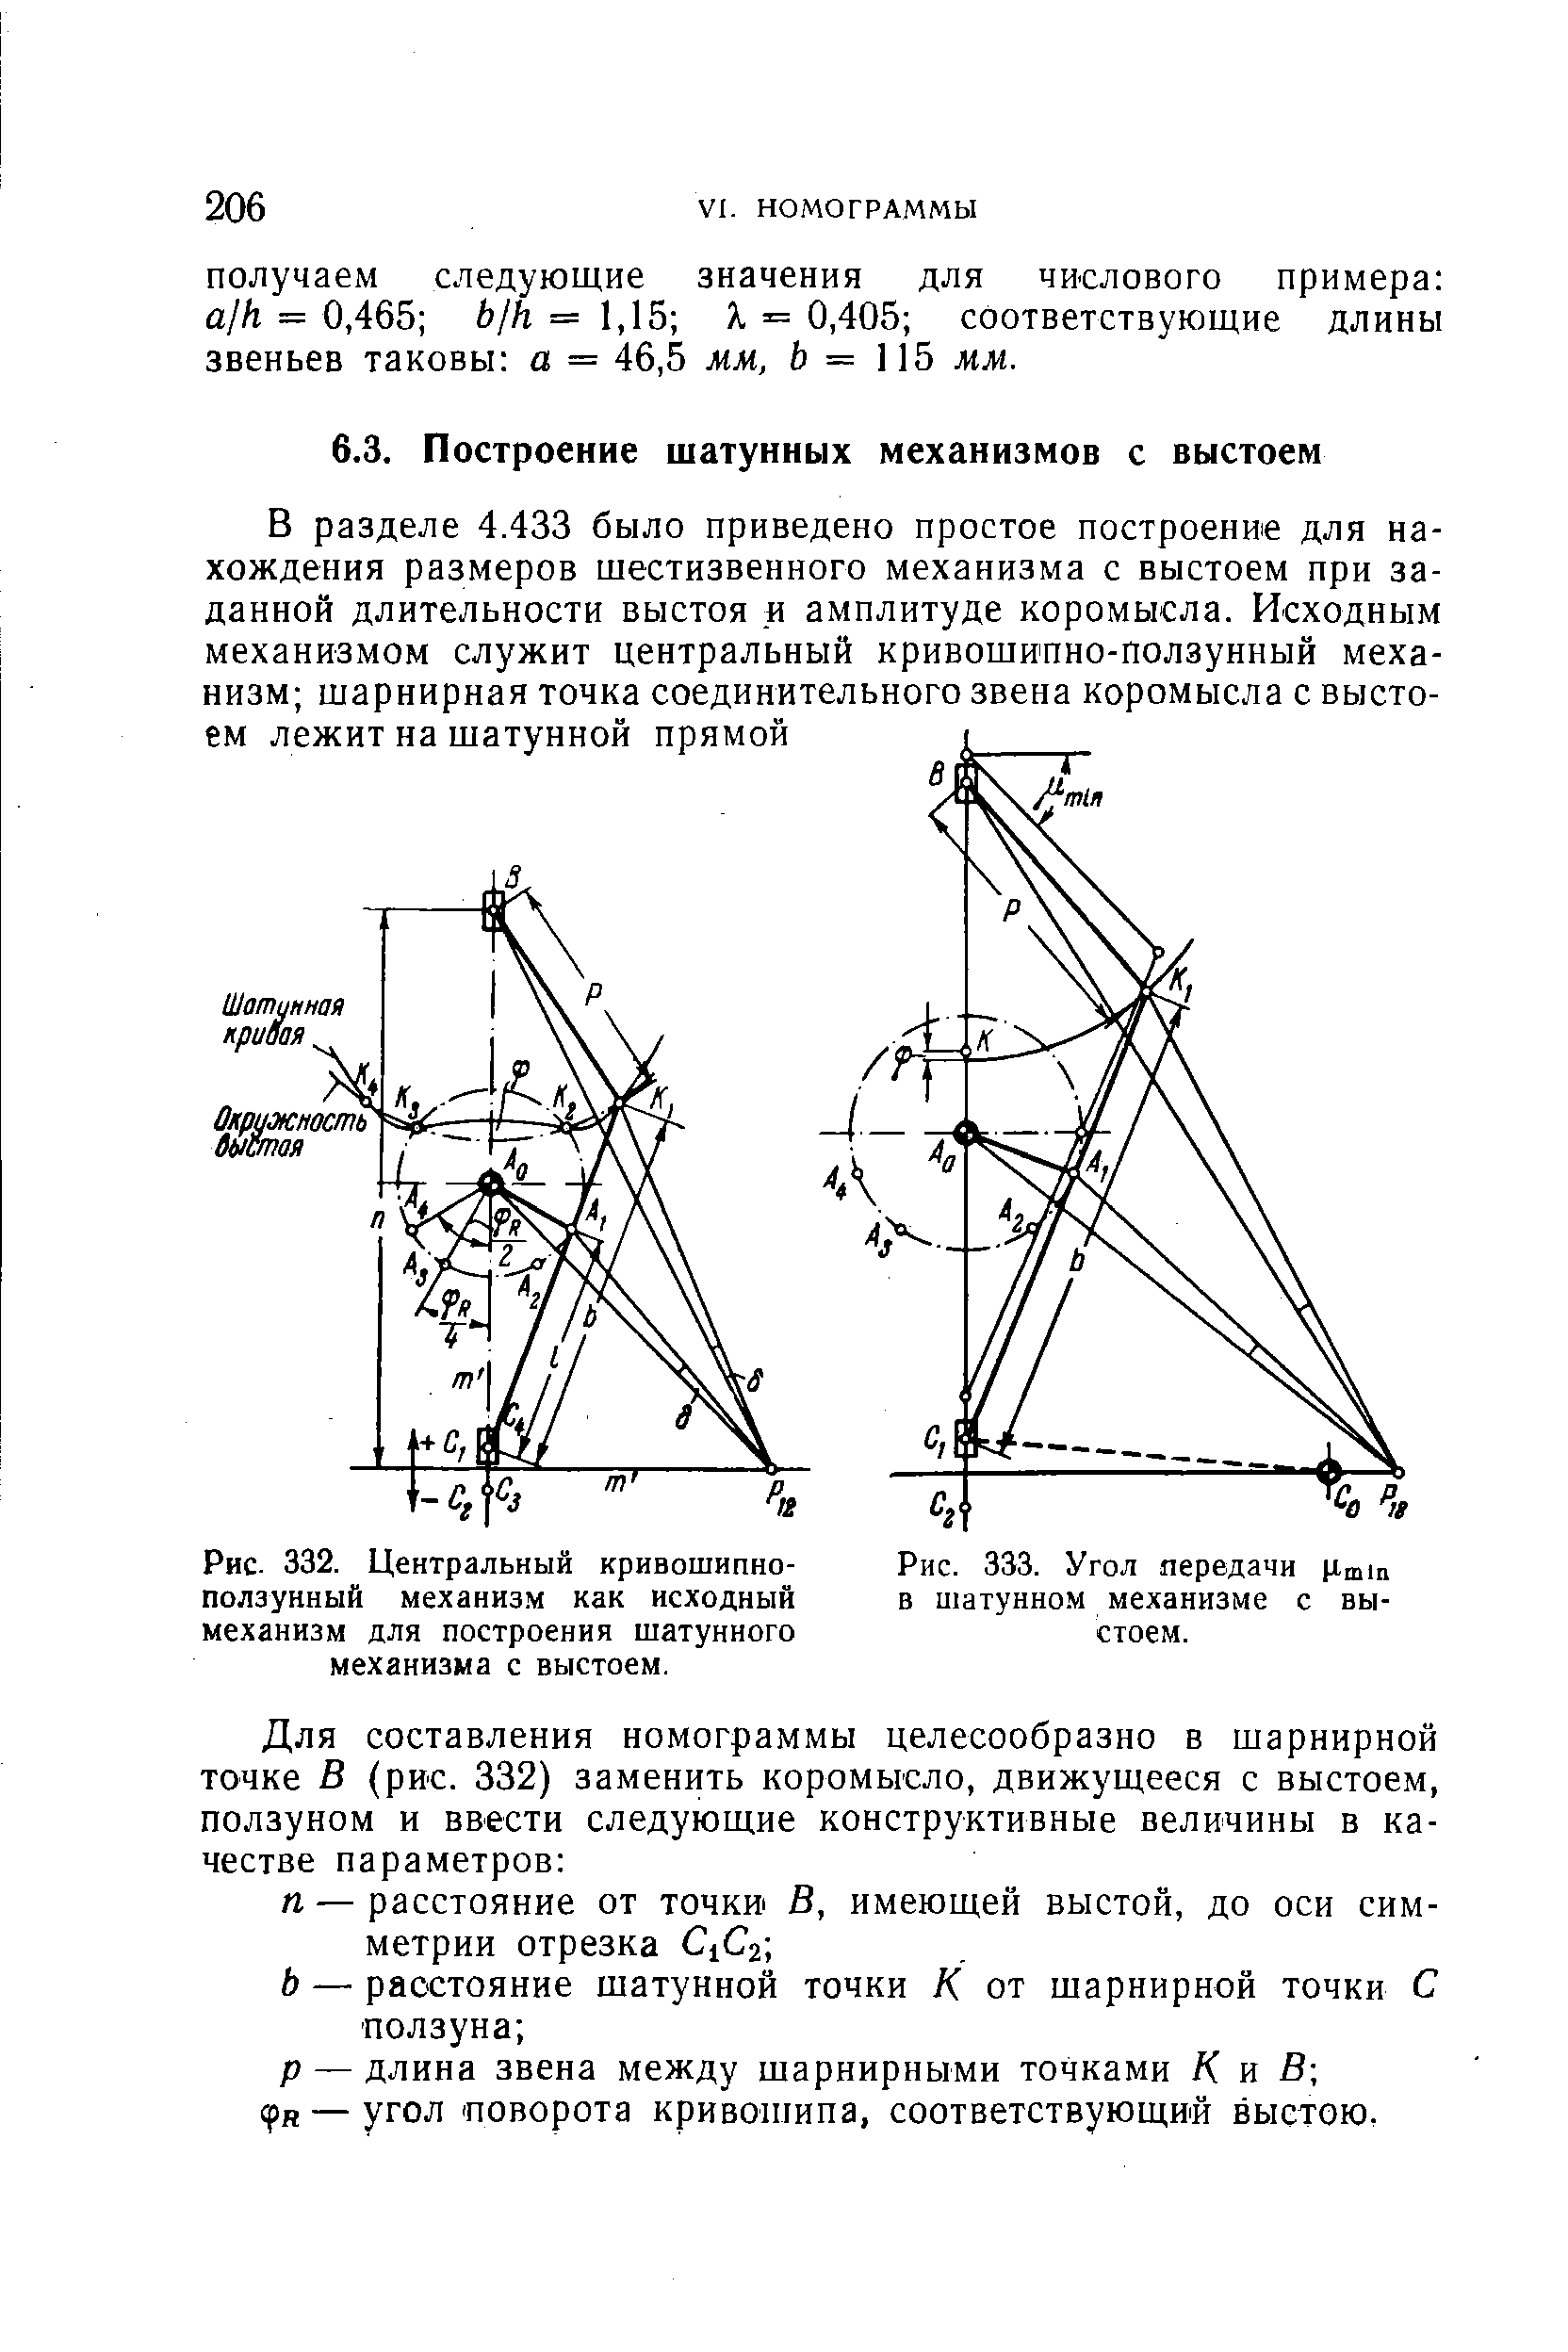 Рис. 332. Центральный кривошипно-ползунный механизм как исходный механизм для построения шатунного механизма с выстоем.
